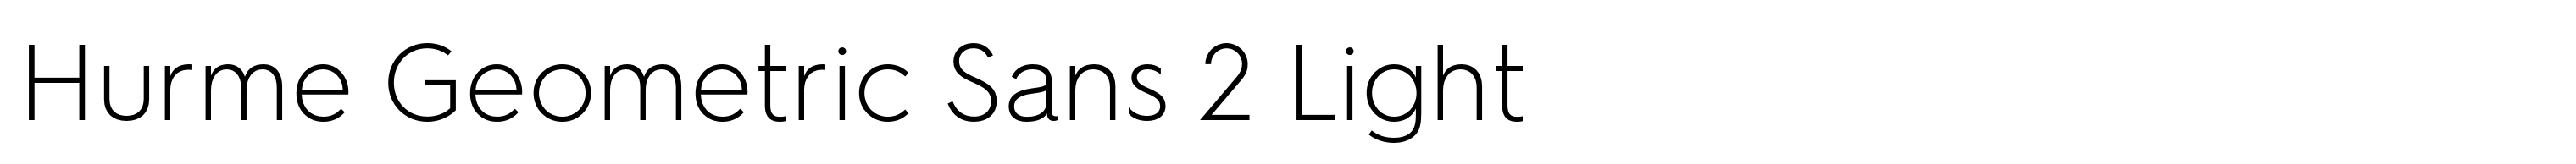 Hurme Geometric Sans 2 Light